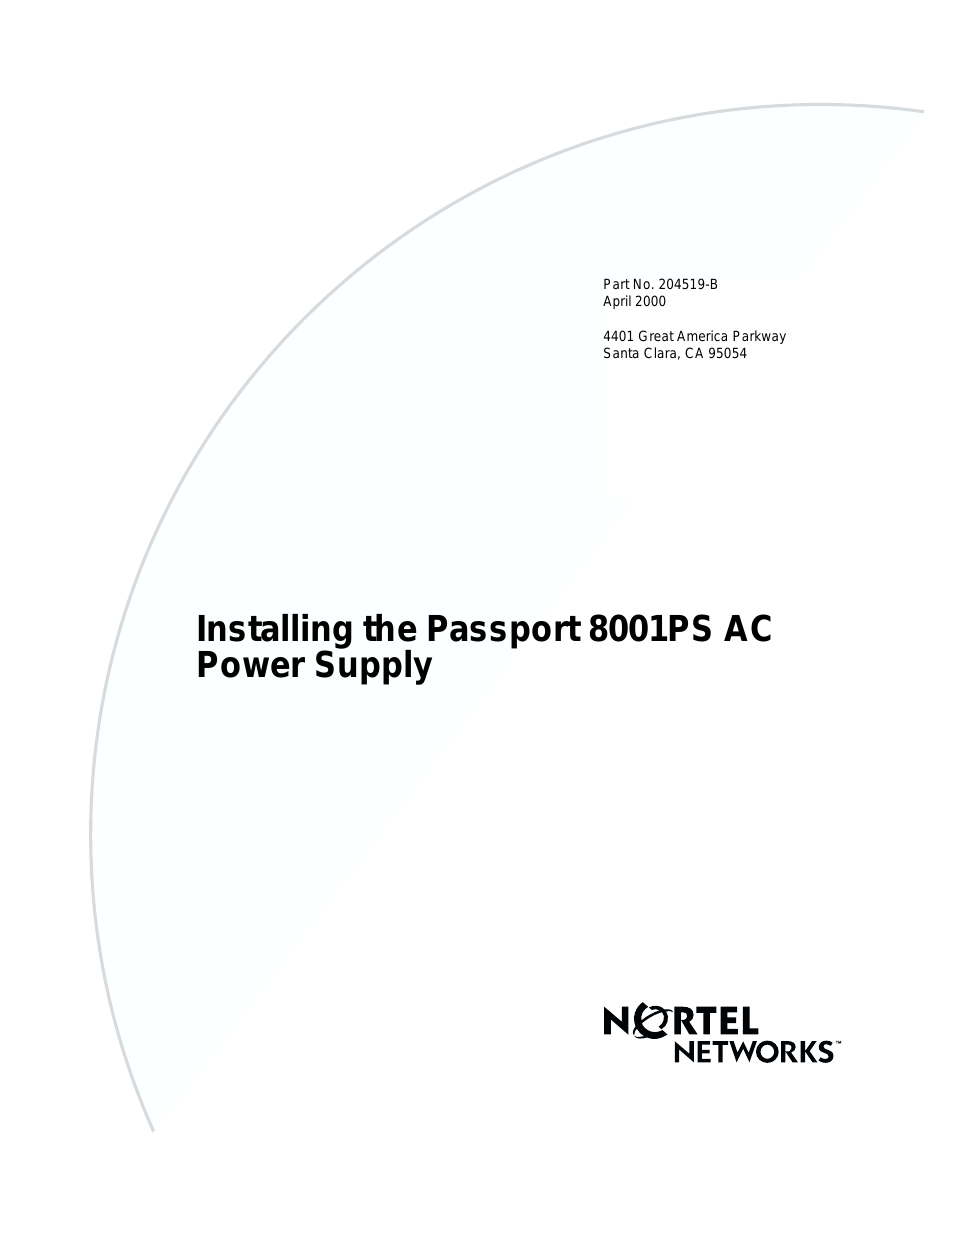 Passport 8001PS